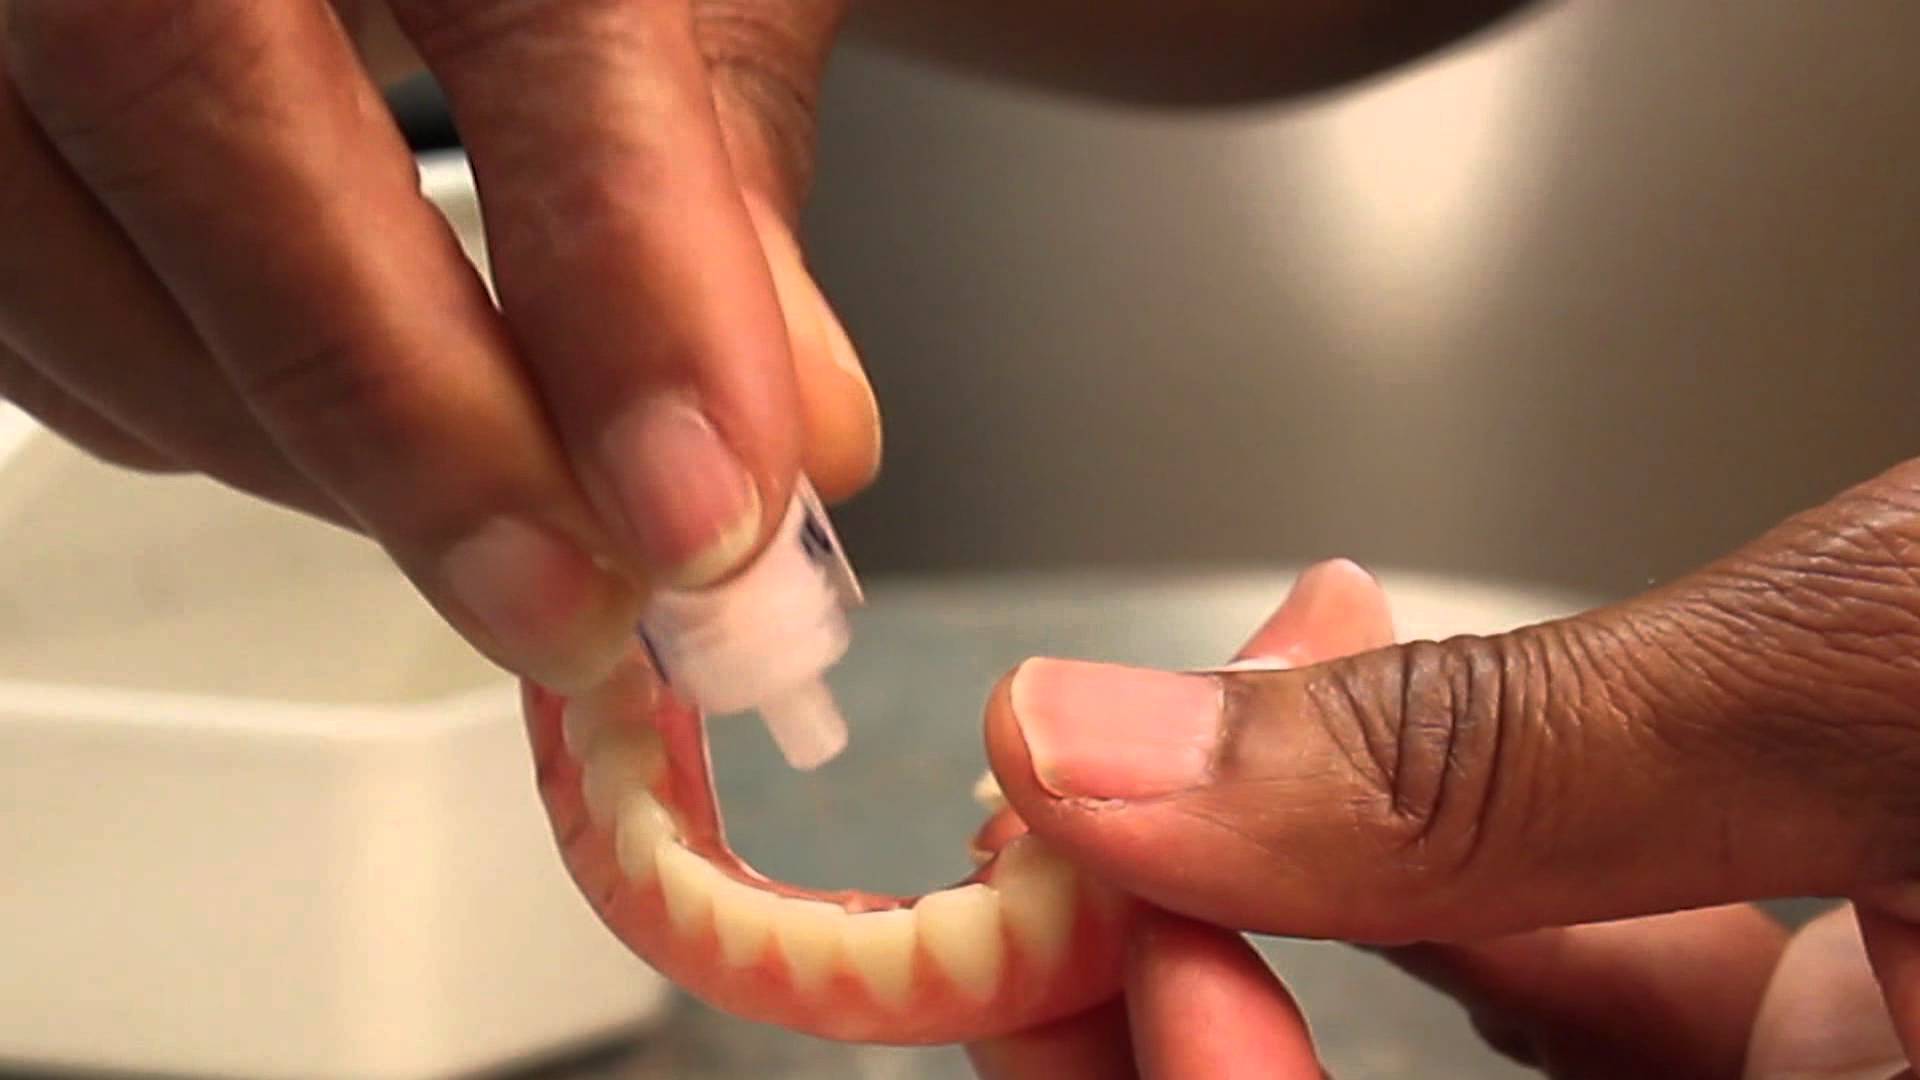 Какой клей лучше использовать в домашних условиях для зубных протезов из пластмассы, как склеить мост, если он лопнул?